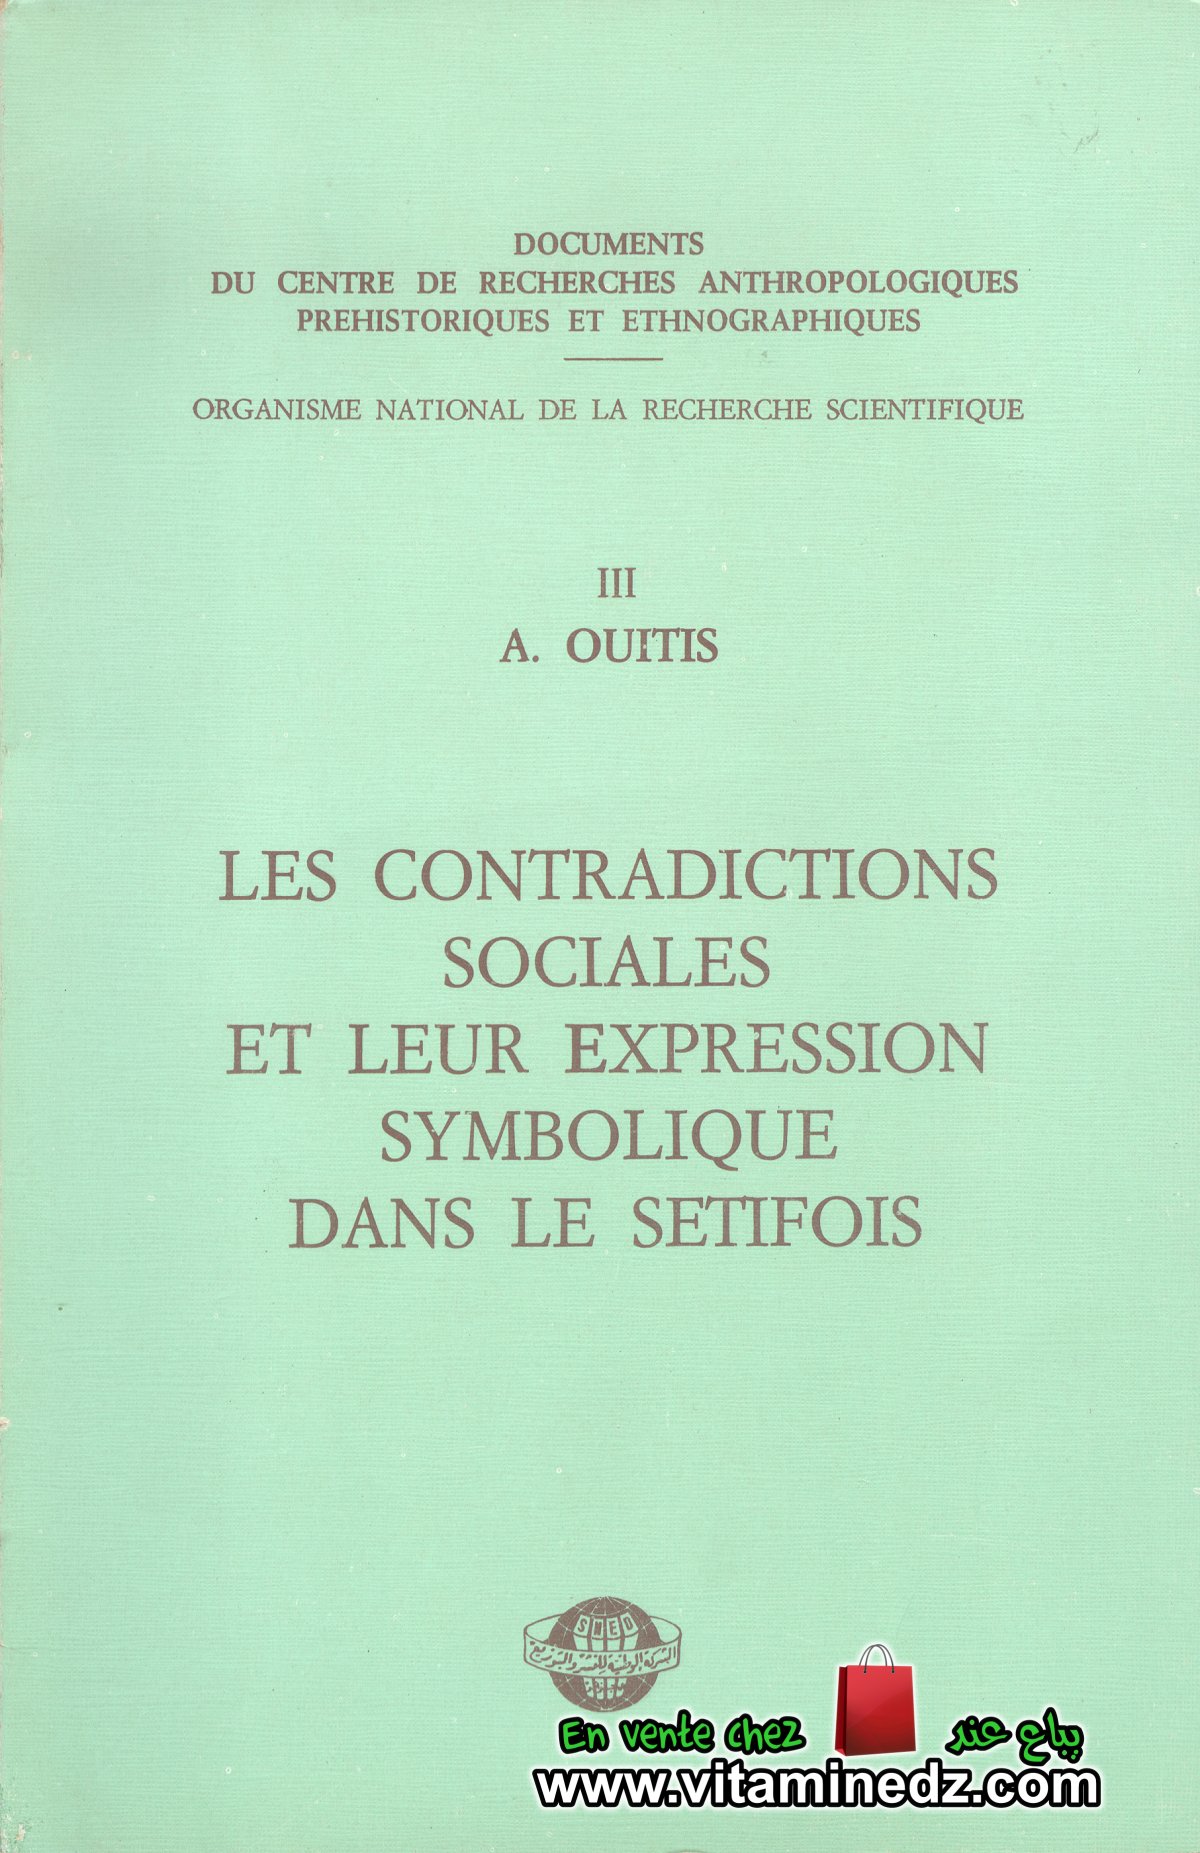 A. Ouitis - Les contradictions sociales et leur expression symbolique dans le Setifois (1977)